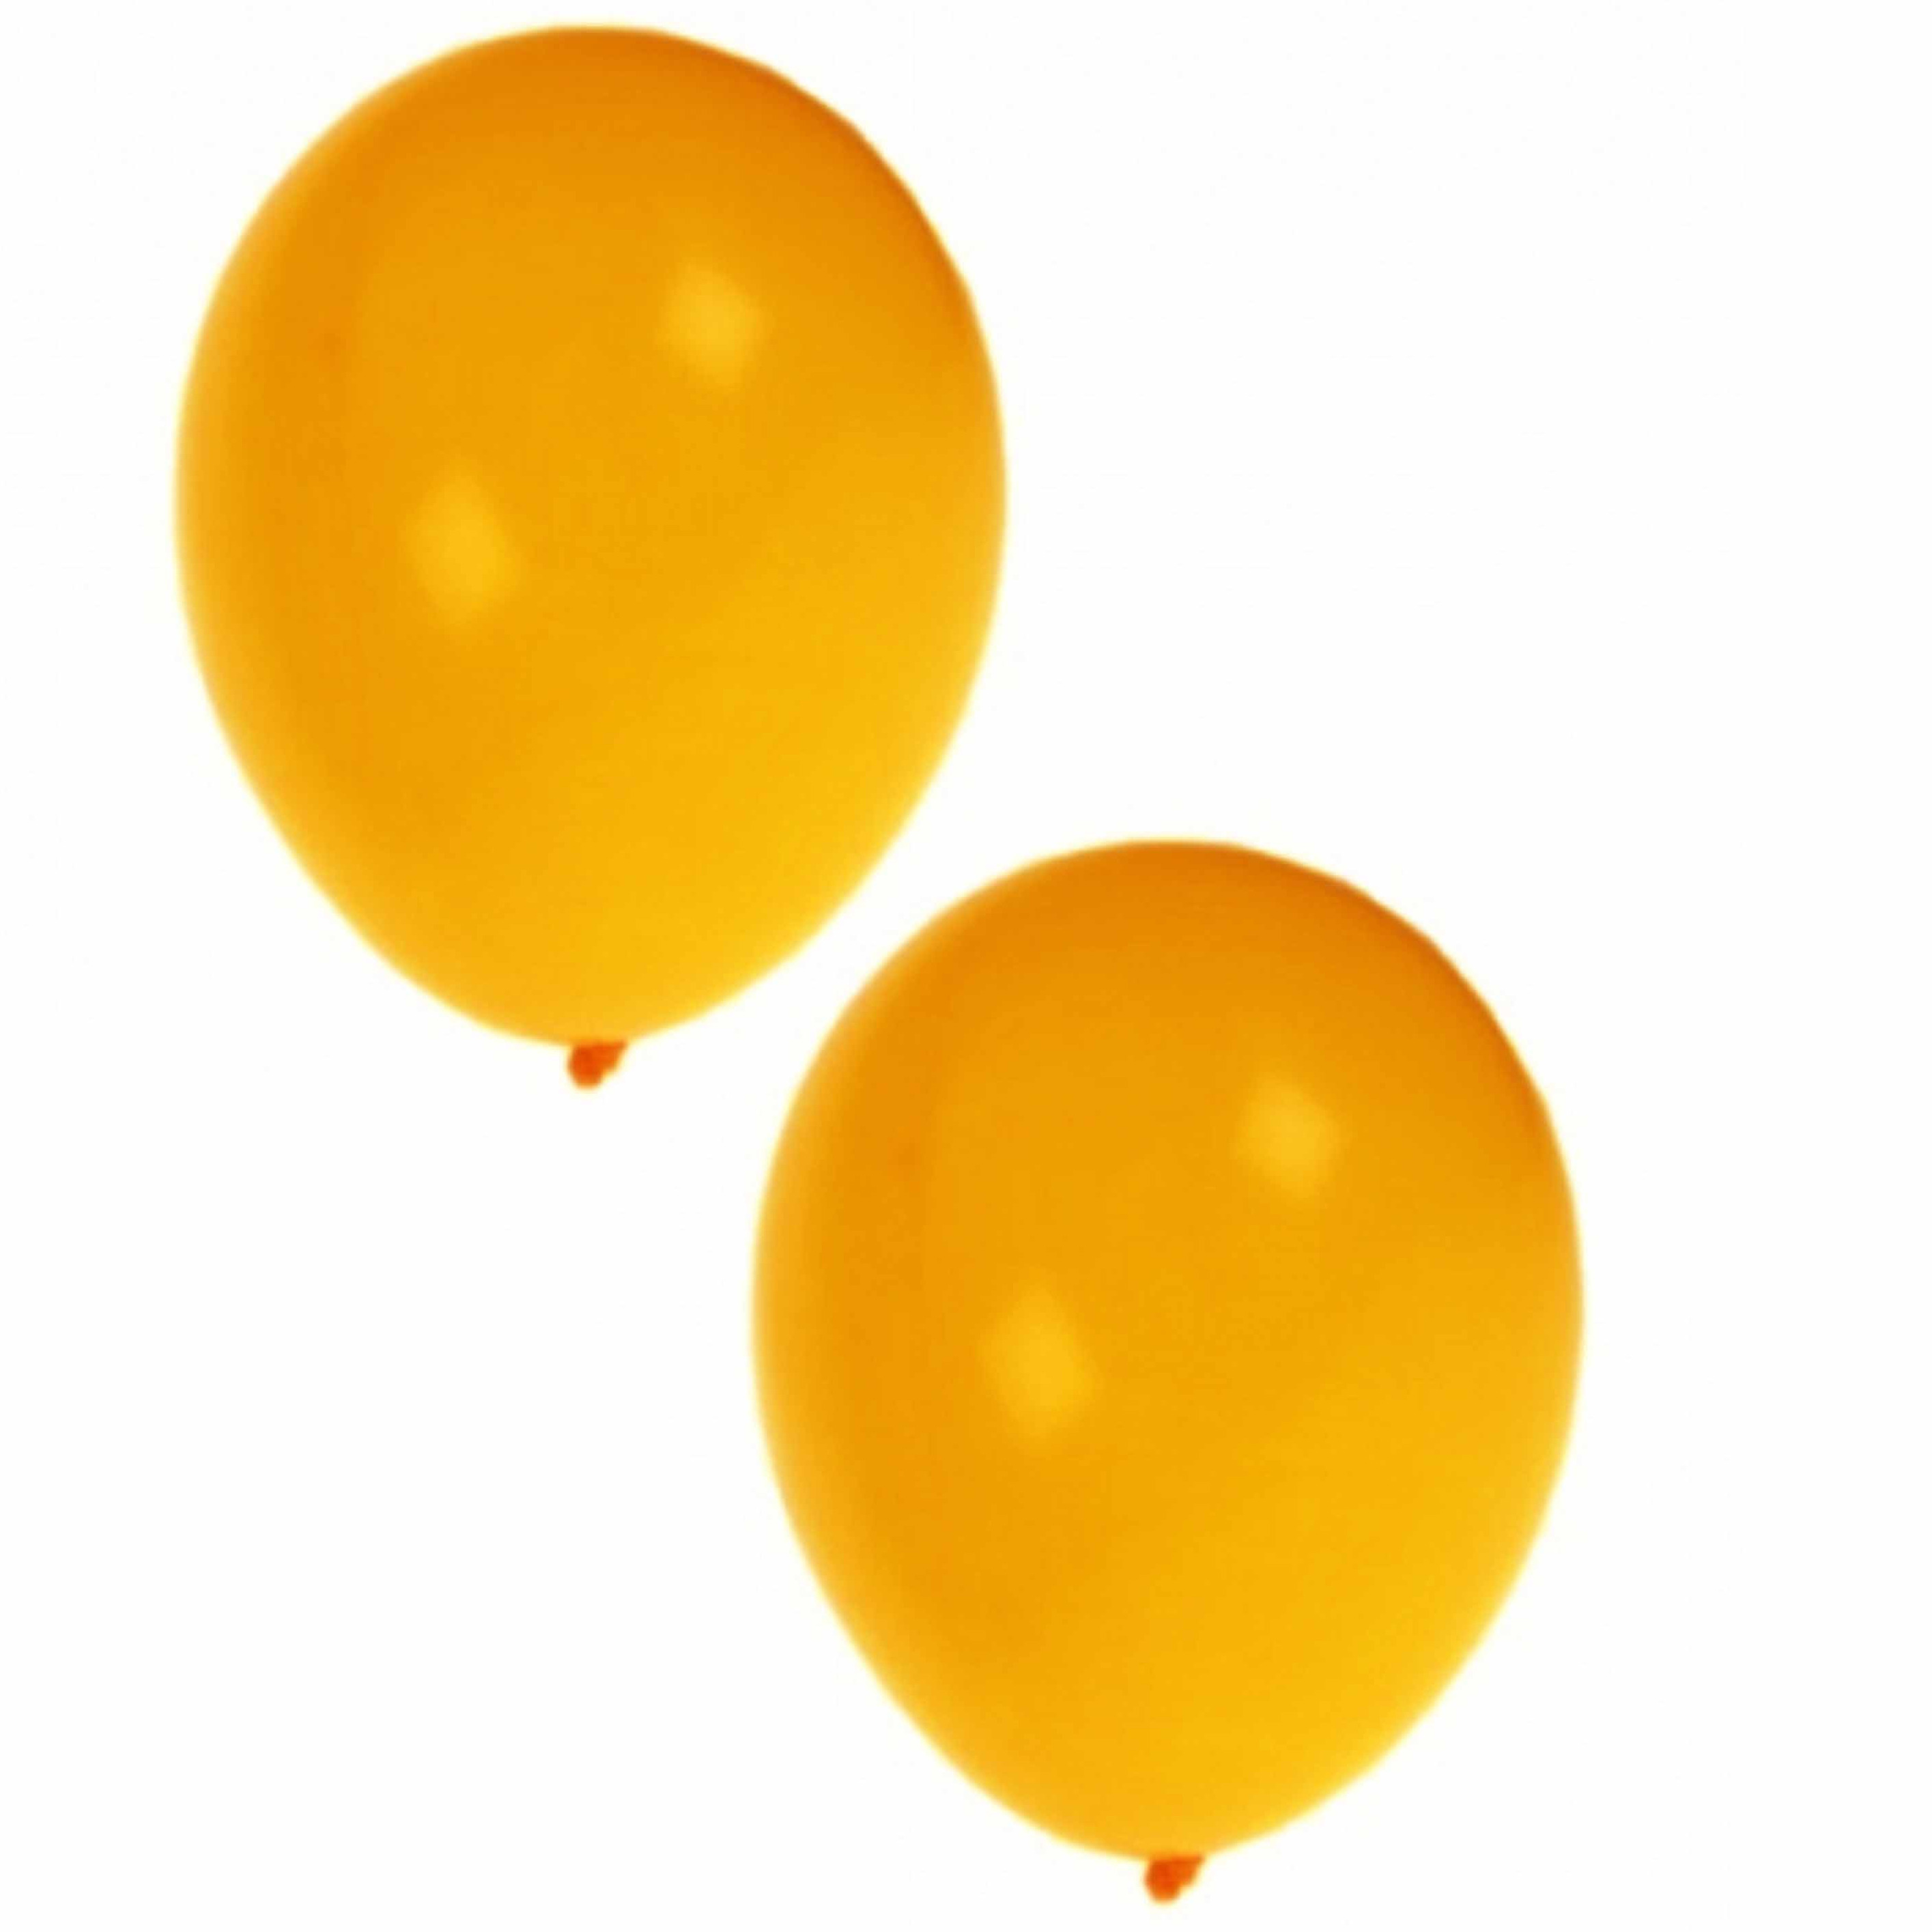 Gele ballonnen 300 stuks